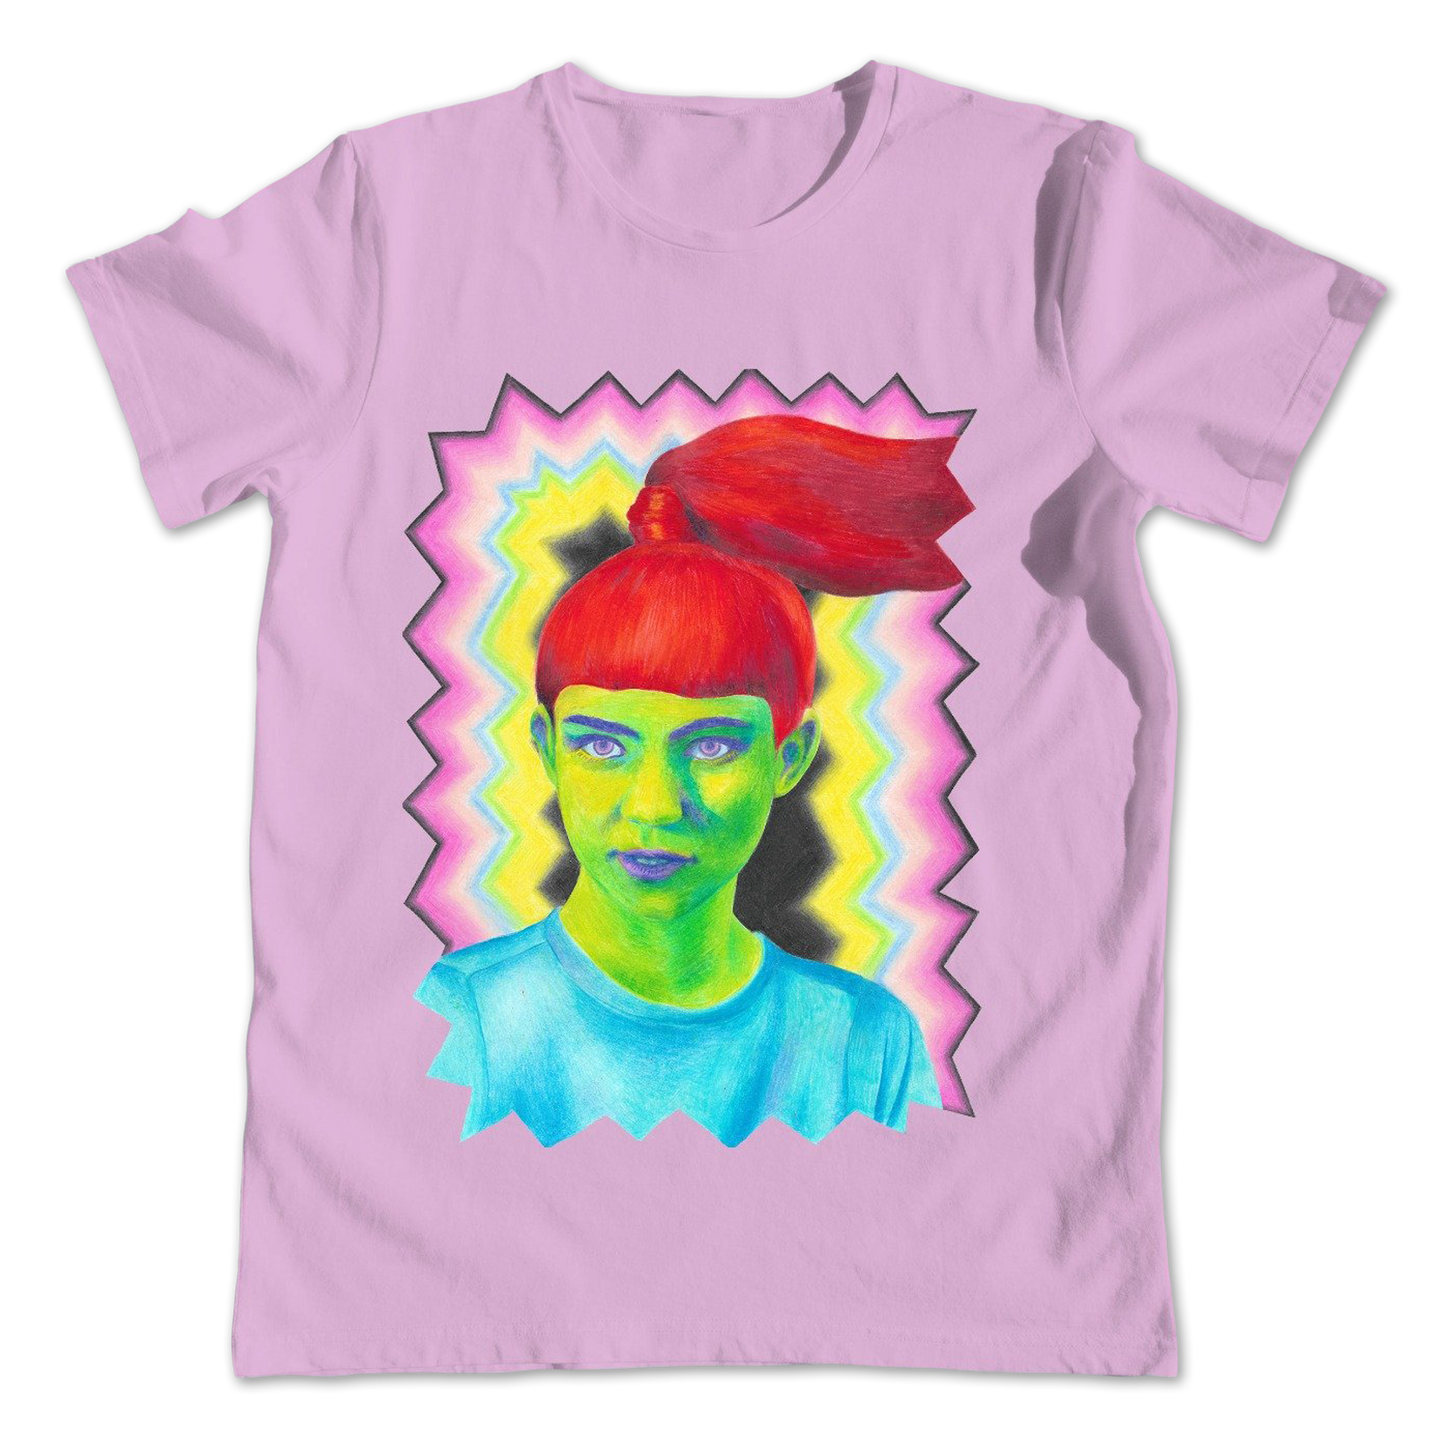 The Grimes Pop Art T-shirt